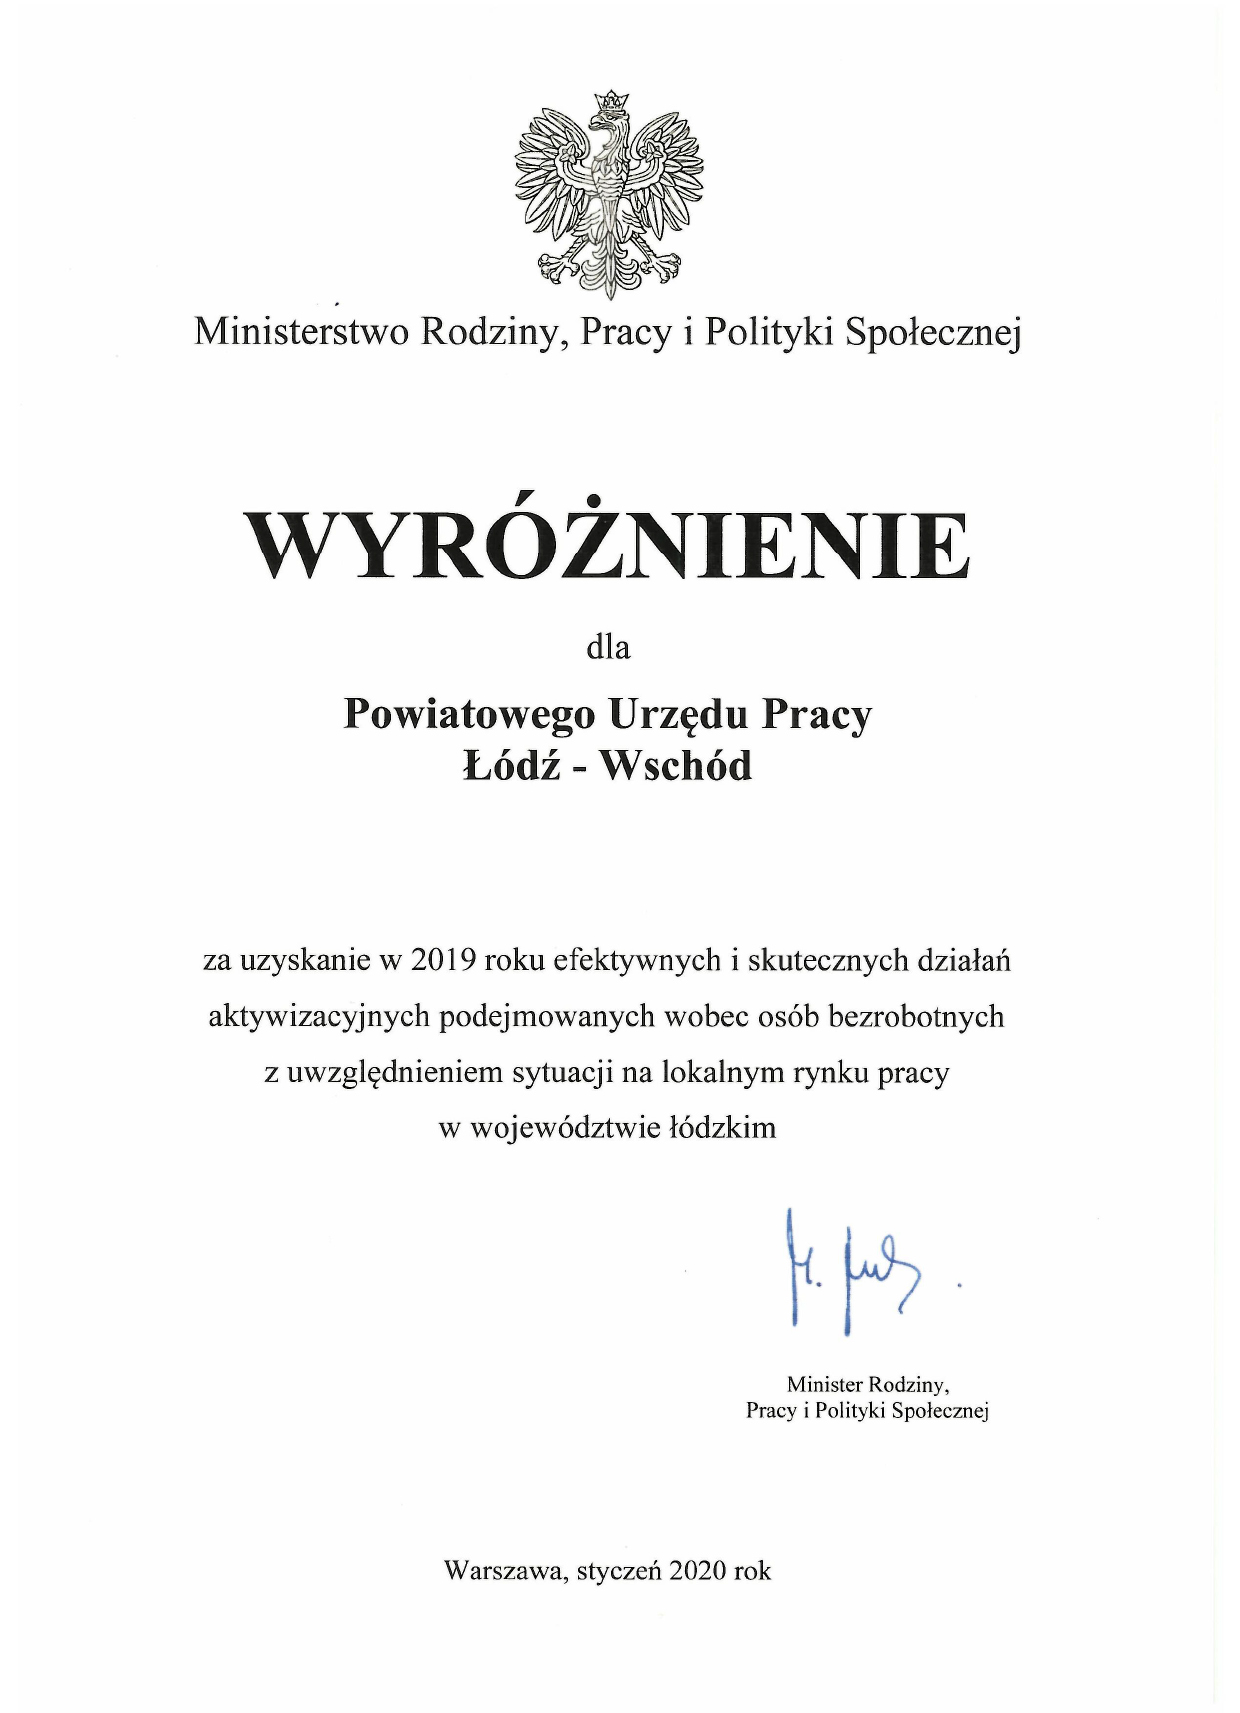 Wyróżnienie dla Powiatowego Urzędu Pracy Łódź - Wschód